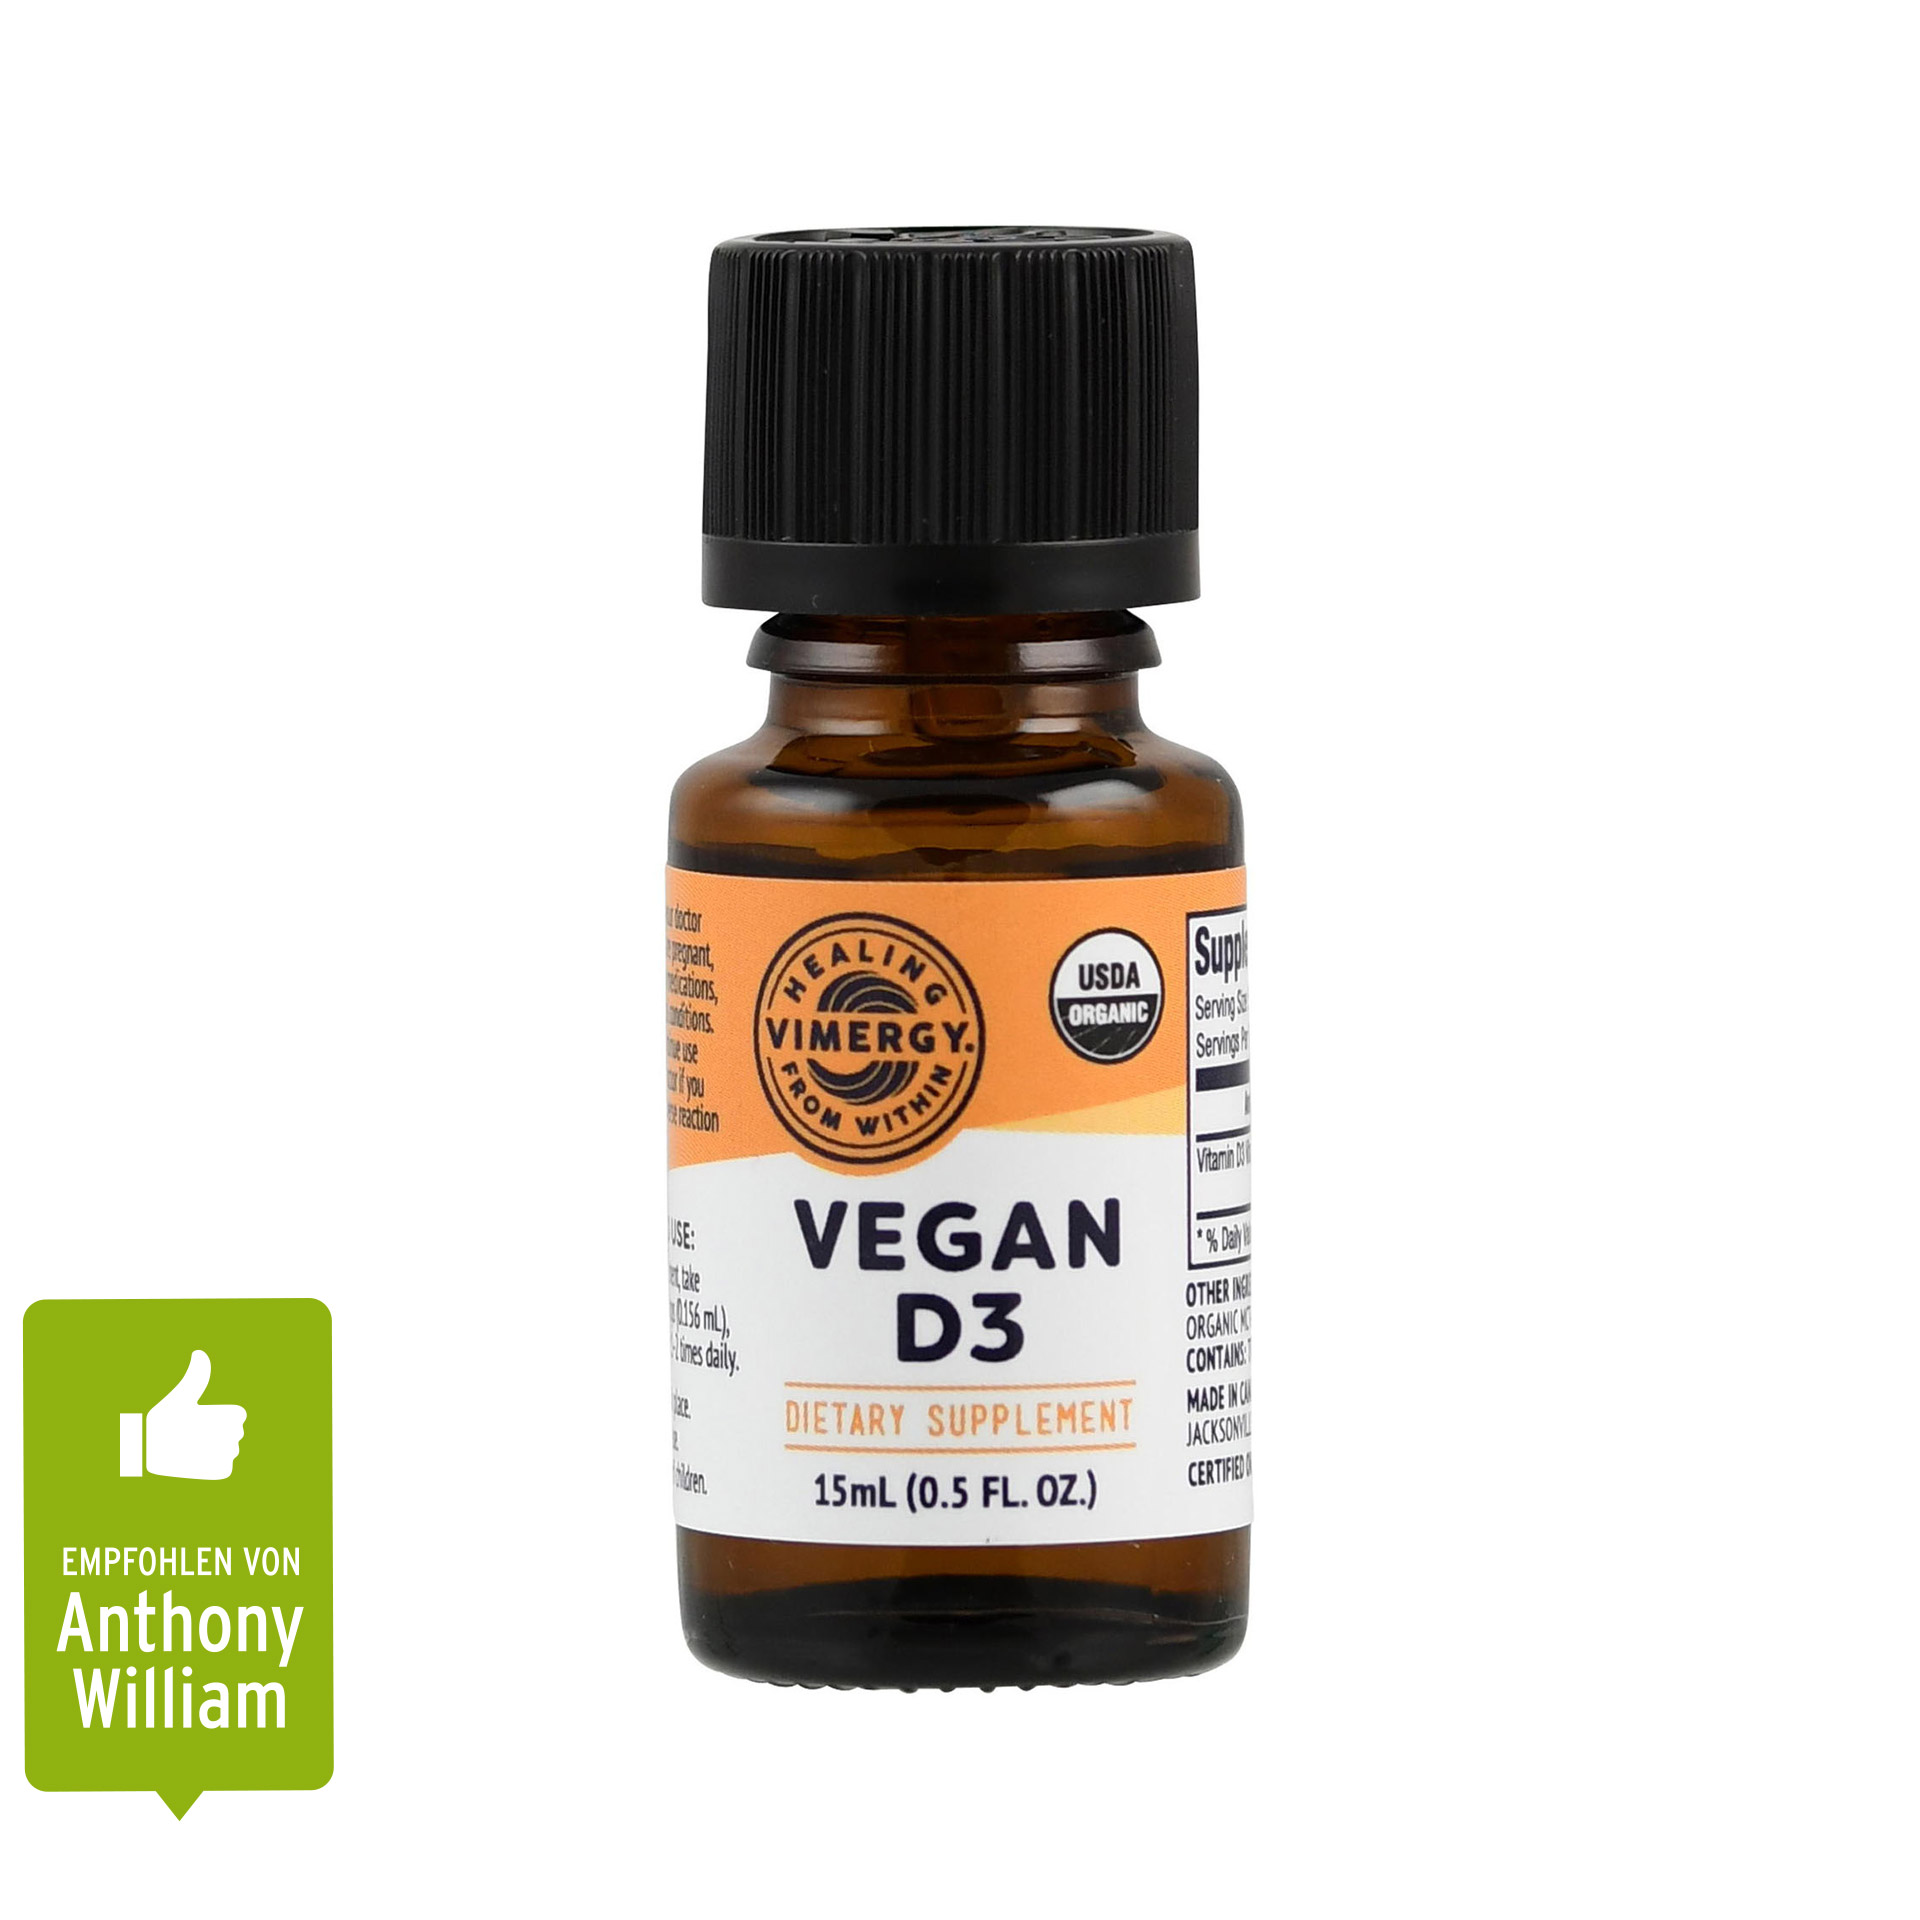 Vimergy Vegan Vitamin D3 flüssig